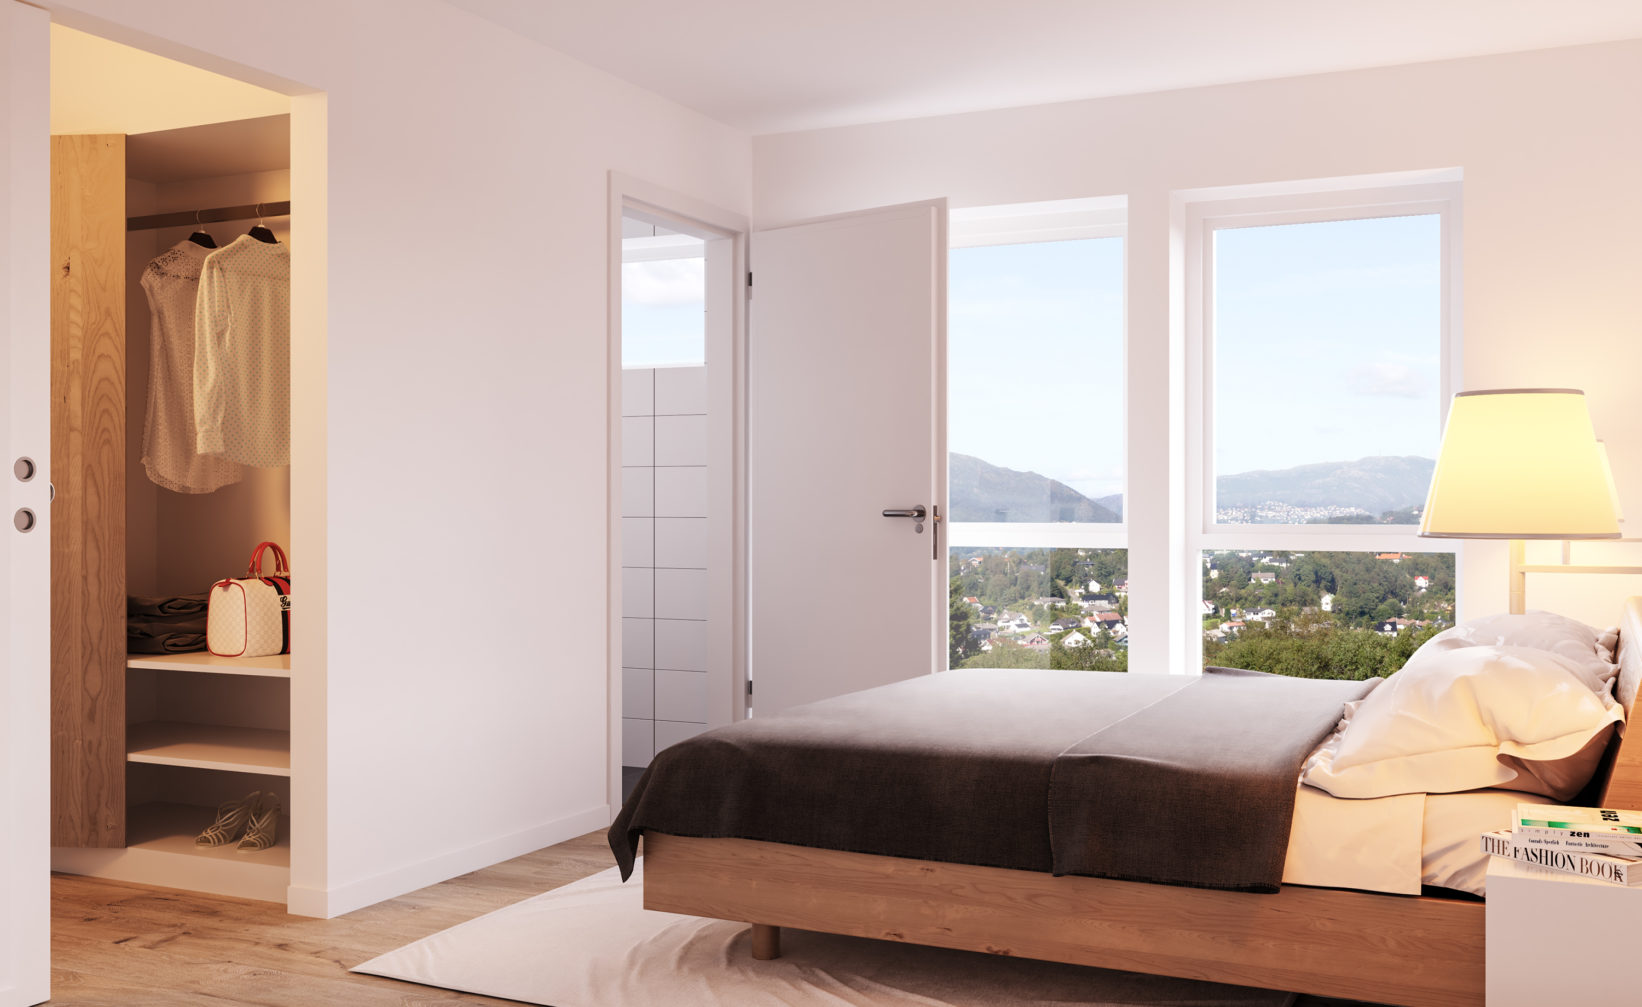 En seng på et soverom visualisert for salg, laget av Bruaas & Kalve i 2017, for deres klient Teslo.